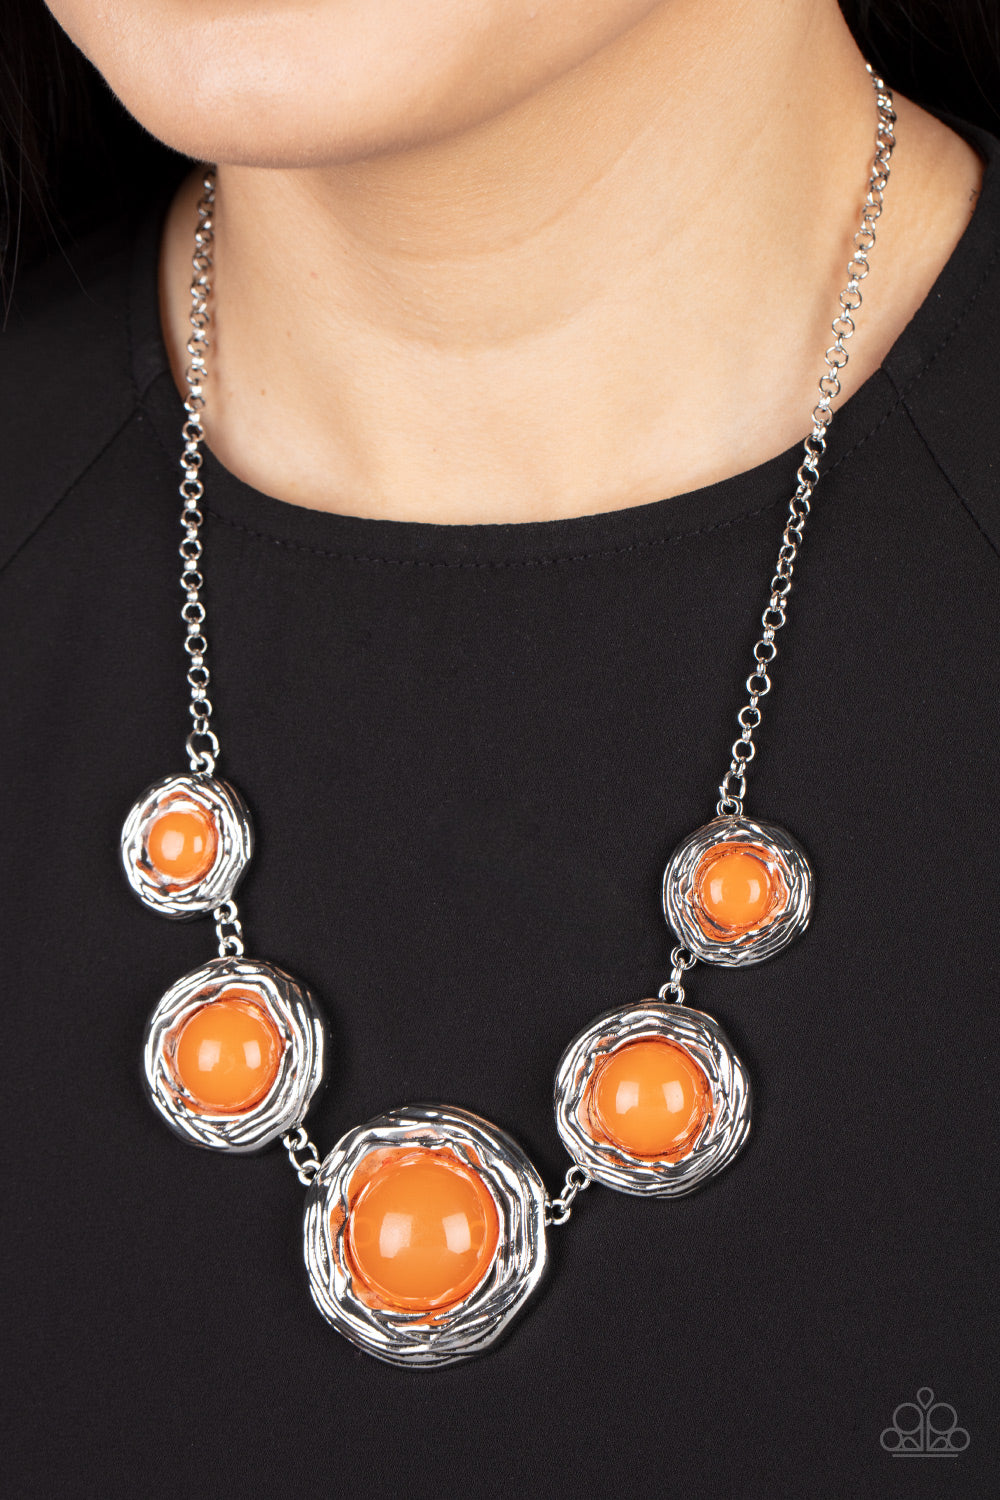 The Next NEST Thing - Orange Paparazzi Necklace